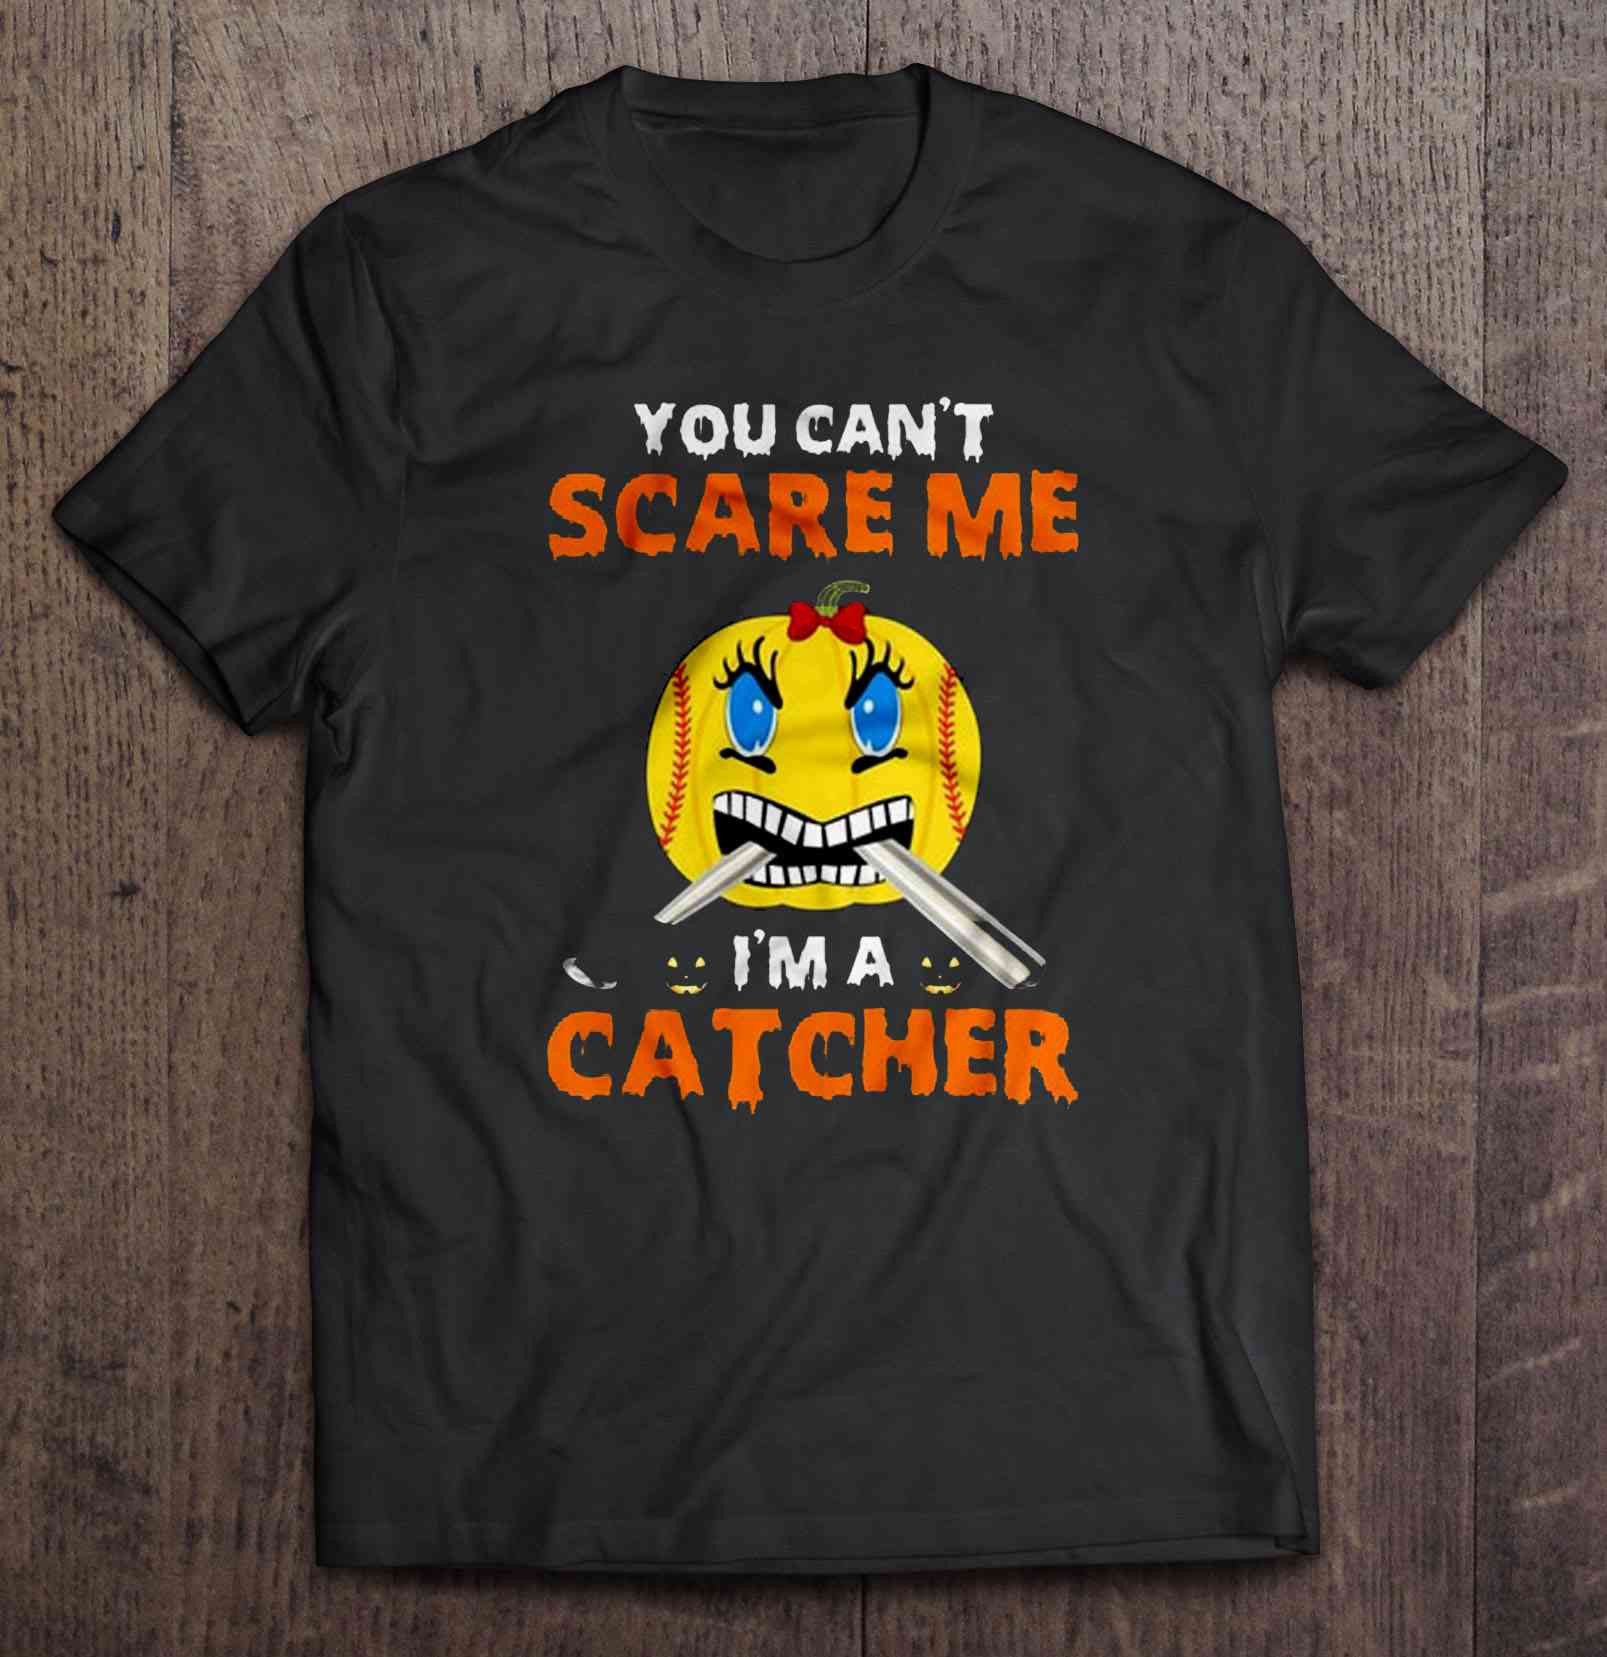 Softball Pumpkin Logo - You Can't Scare Me I'm A Catcher Softball Pumpkin Halloween - T ...